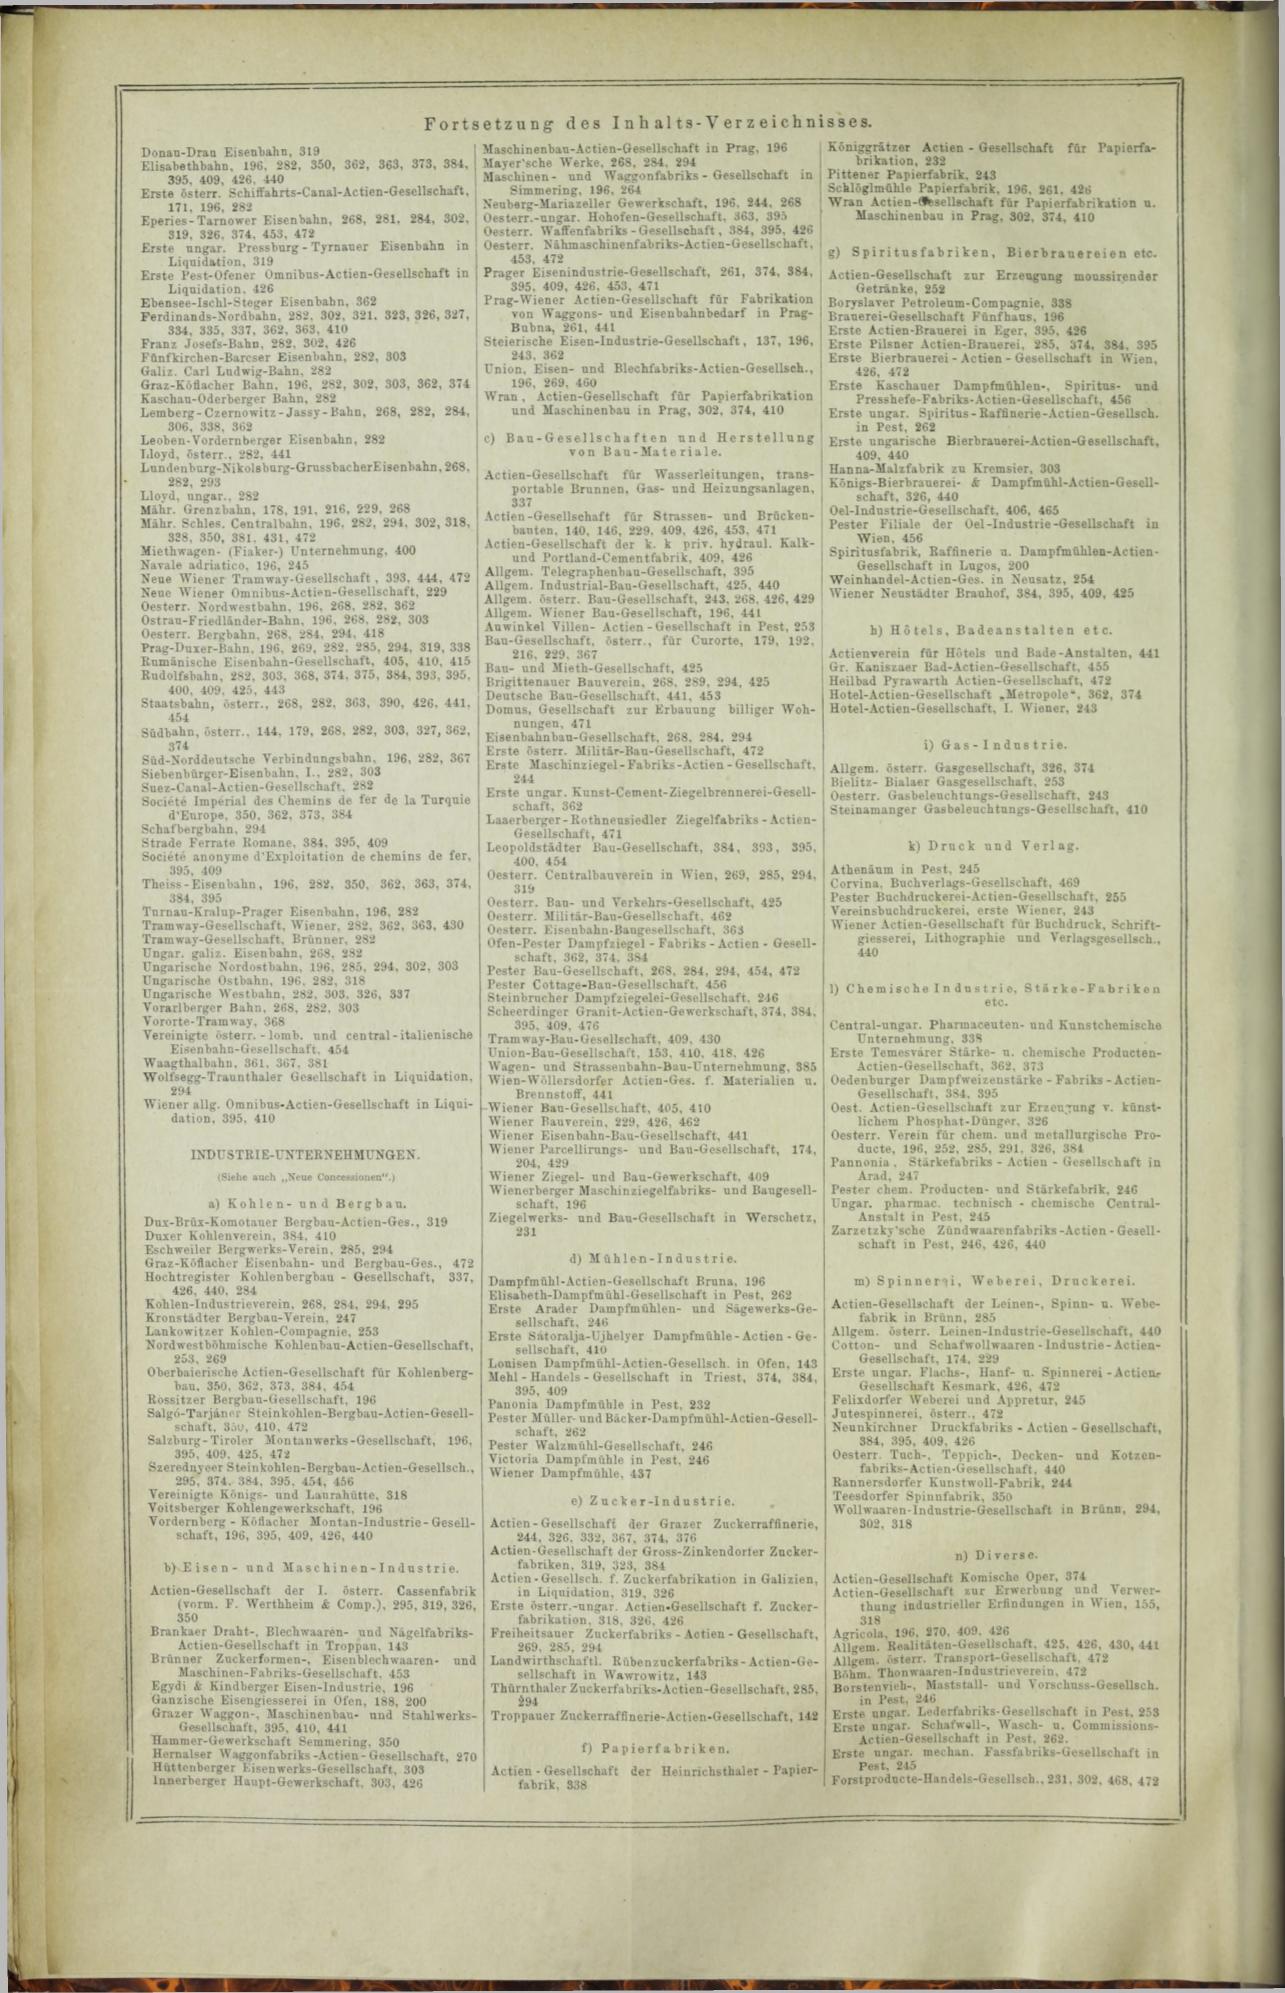 Der Tresor 10.12.1872 - Seite 16